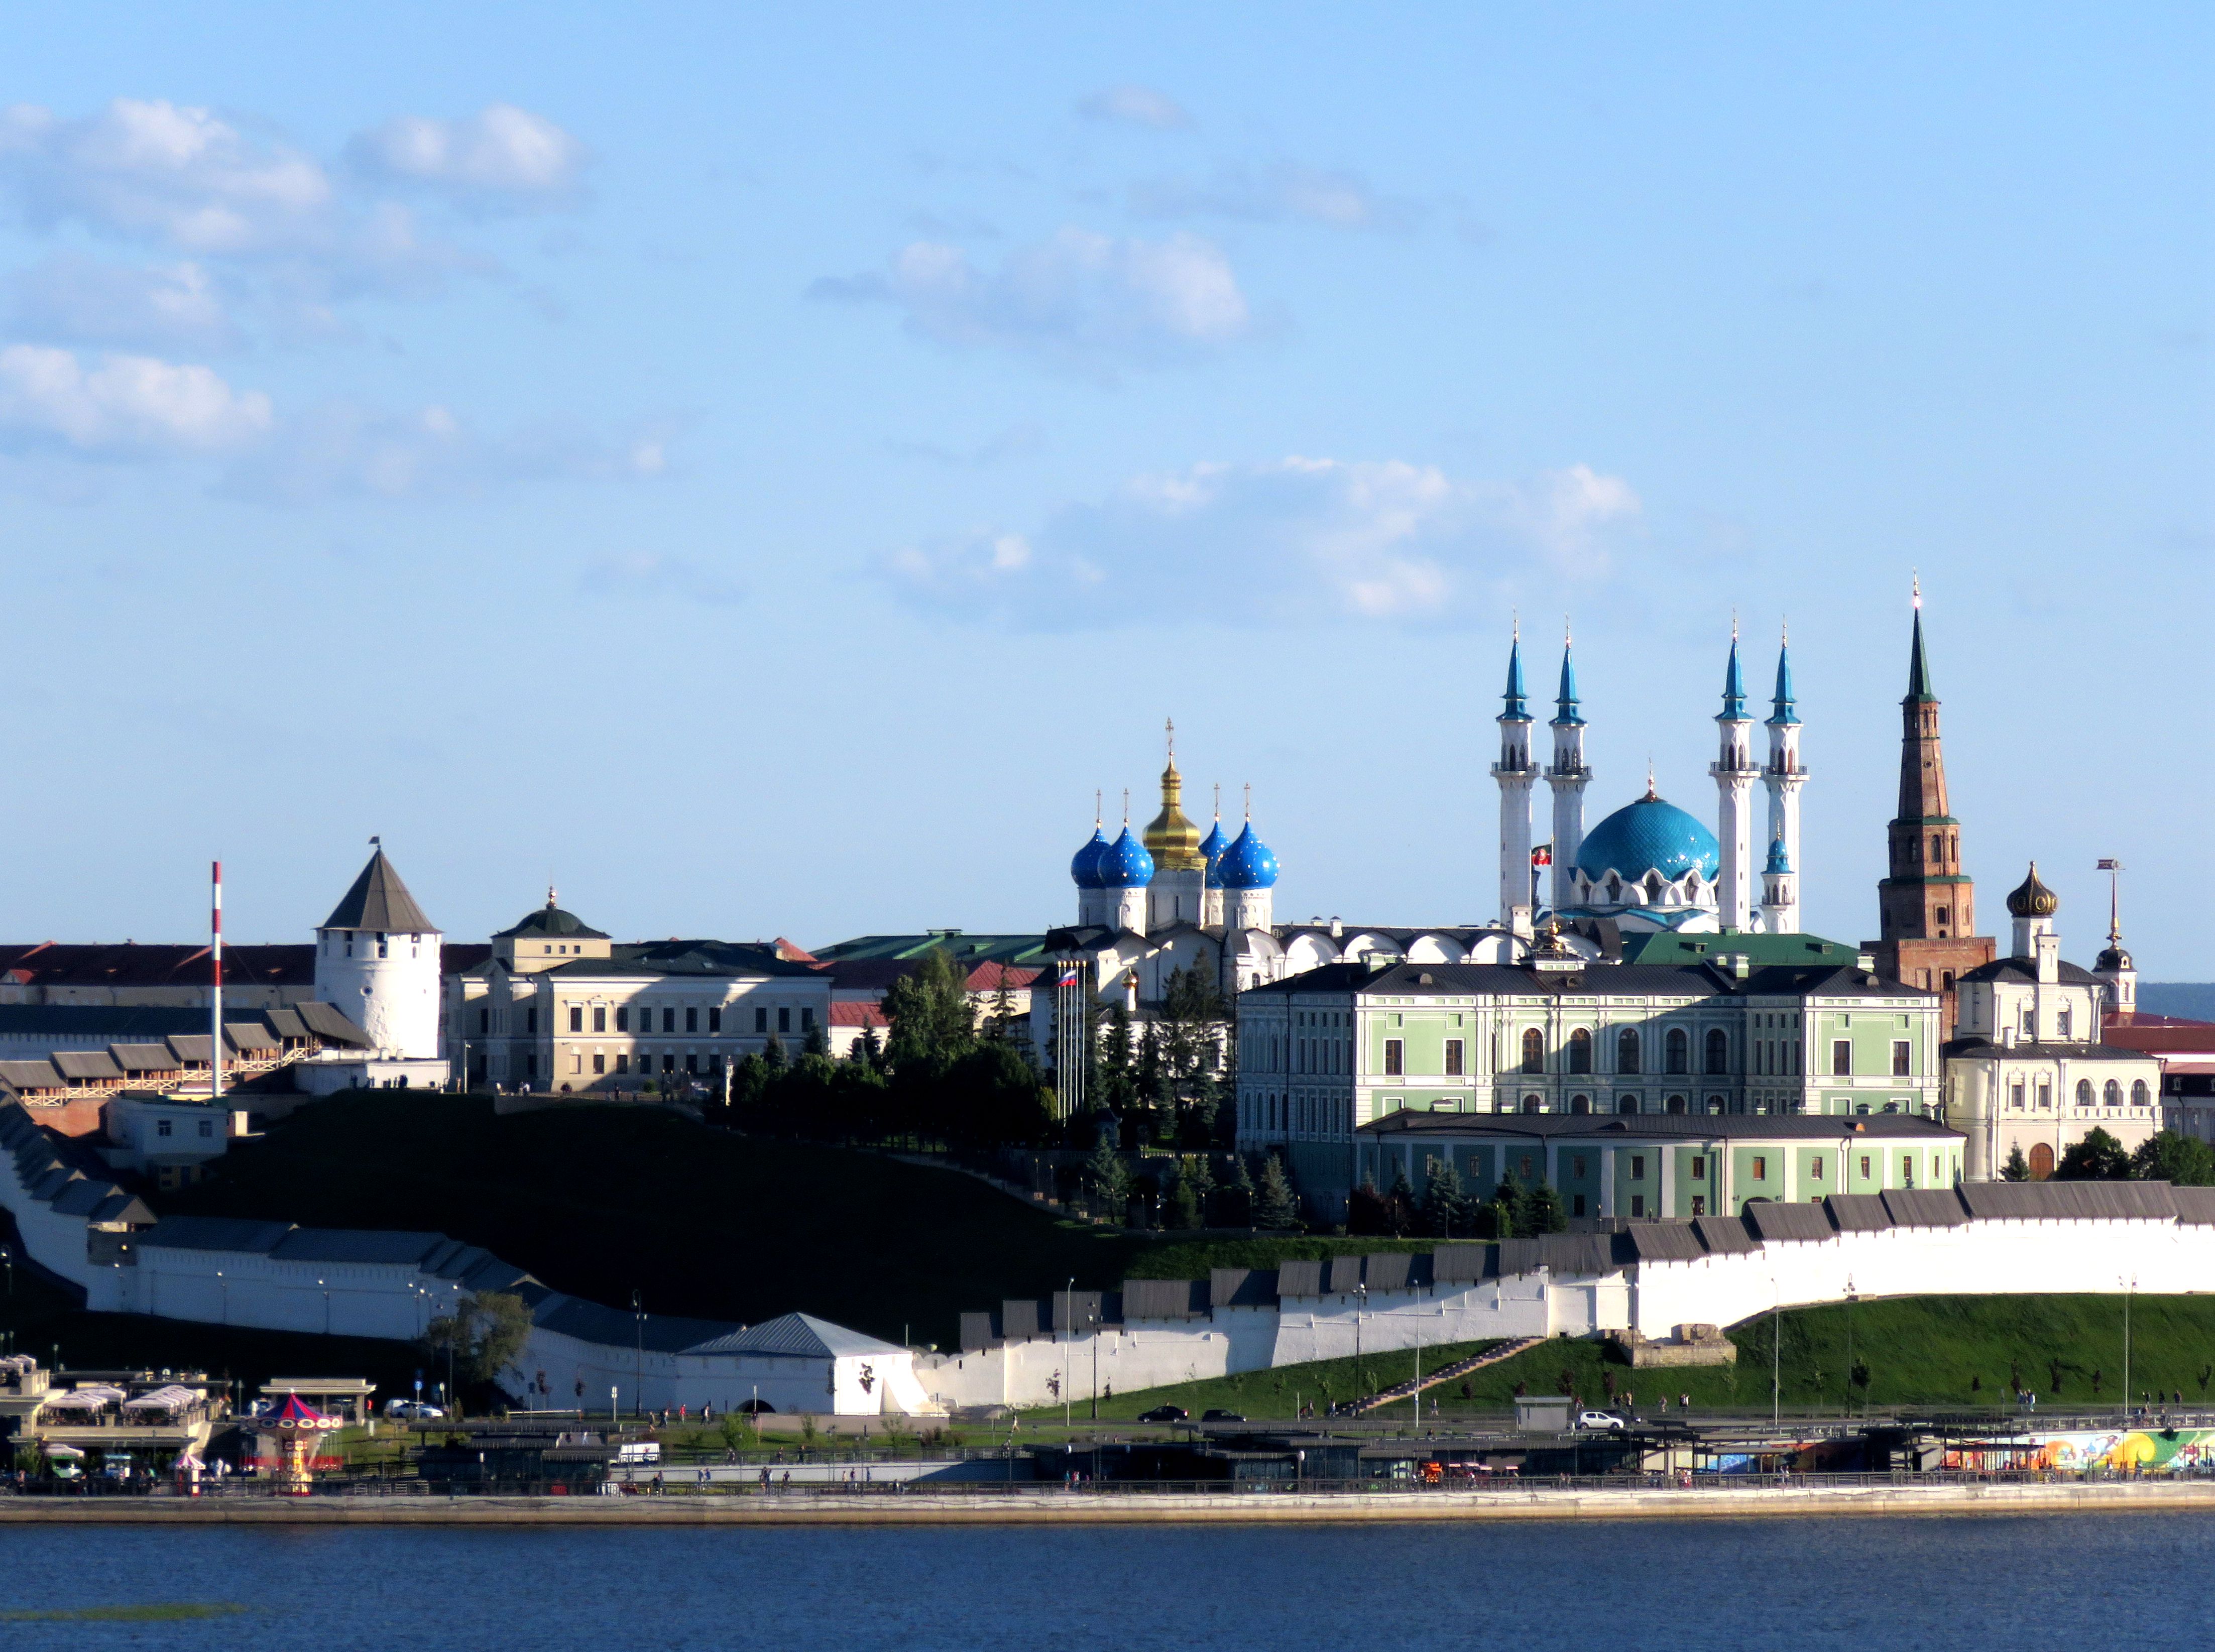 【俄罗斯】喀山克里姆林宫,比莫斯科的还要美